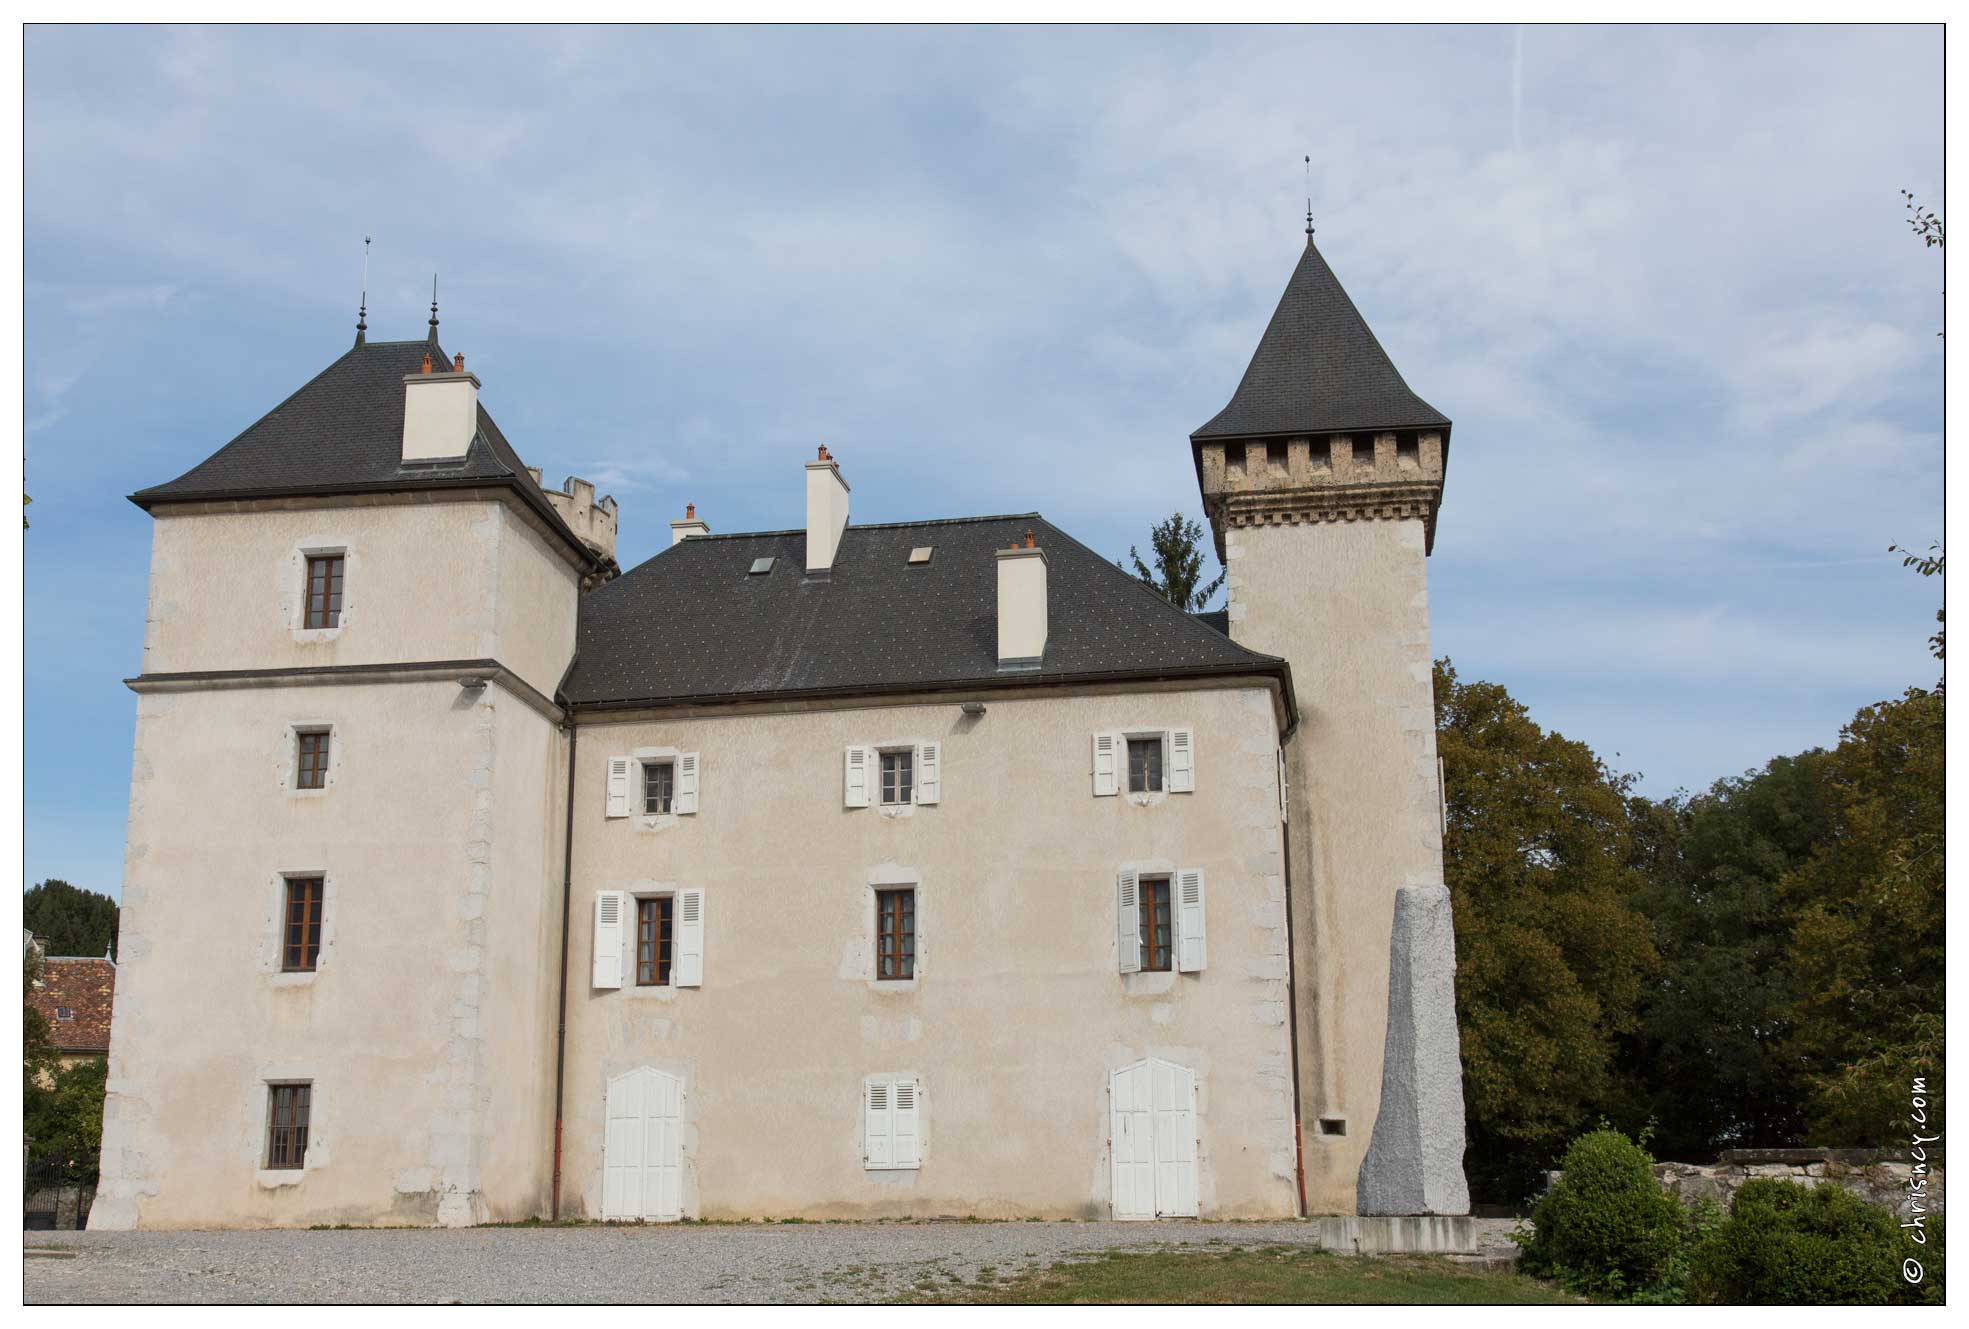 20160904-25_1991-La_Roche_sur_Foron_chateau_de_l'echelle.jpg